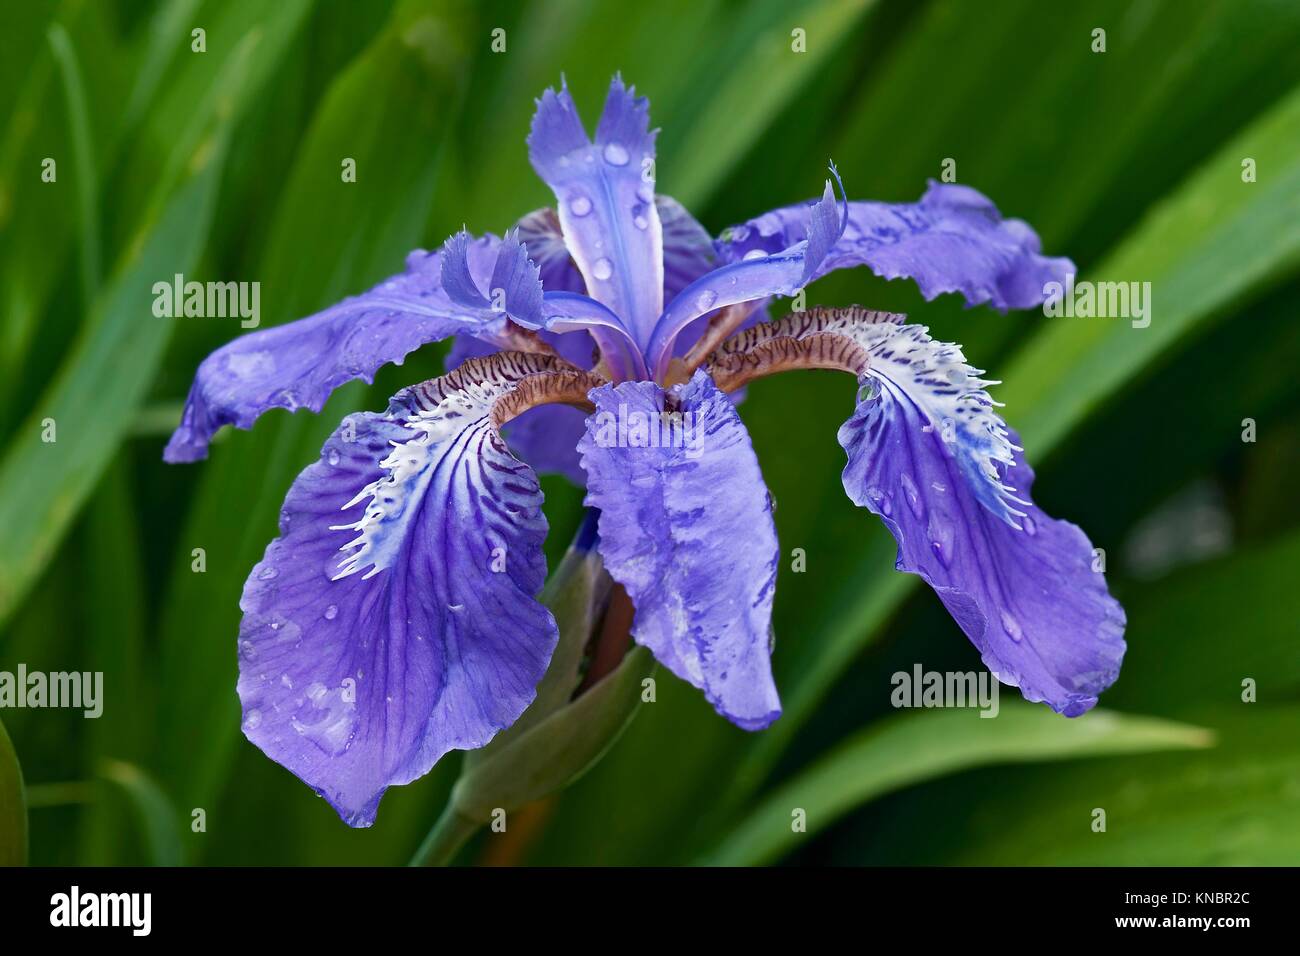 Iris tectorum Maxim,Espectacular Balcón Con Magníficos Colores E Impresionantes Plantas Orgánicas,Decoraciones De Jardín-3 Bulbos,A 